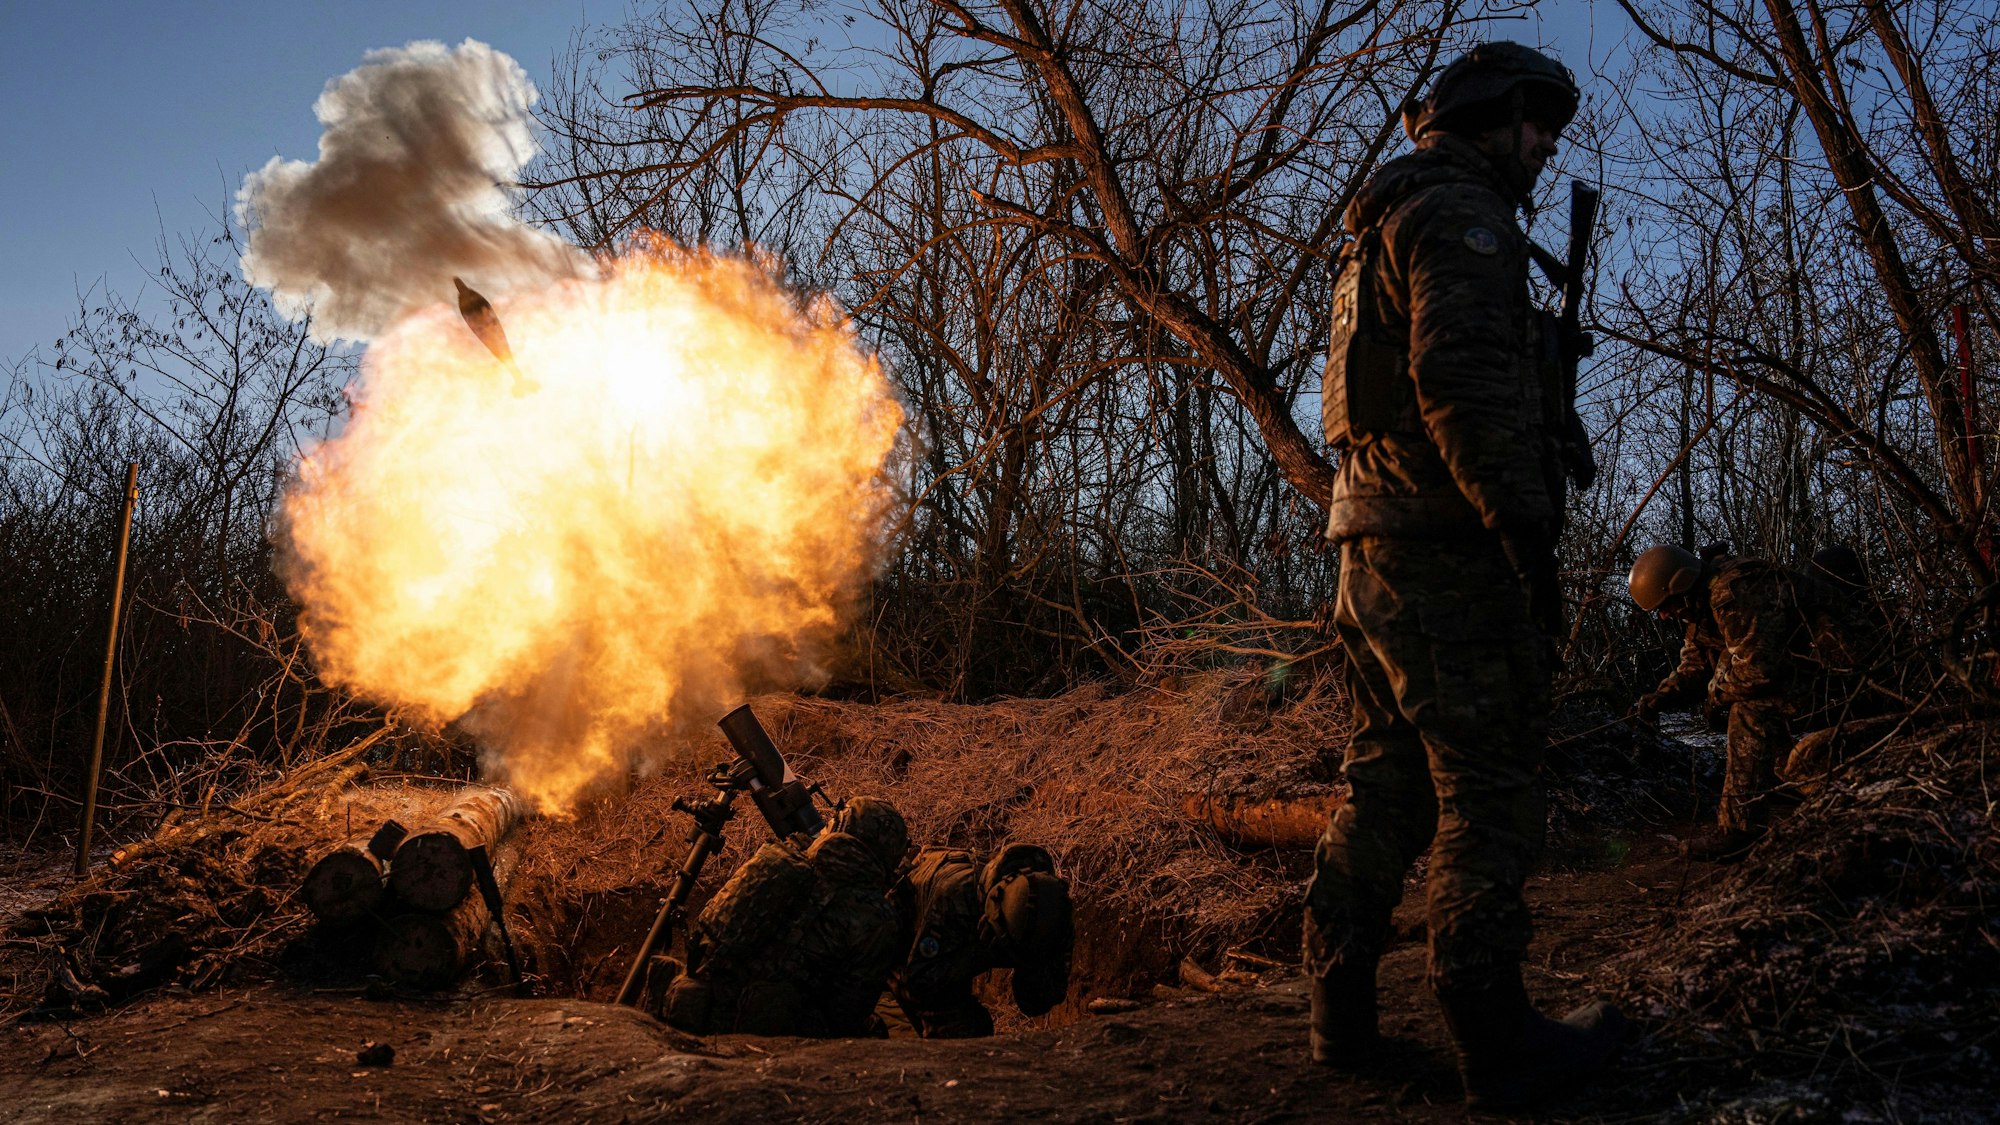 Ukrainische Soldaten feuern einen 120-mm-Mörser auf russische Stellungen an der Frontlinie in der Nähe von Bachmut. Russland hat in der ukrainischen Stadt vor allem Wagner-Söldner eingesetzt, berichten die Soldaten. (Archivbild)